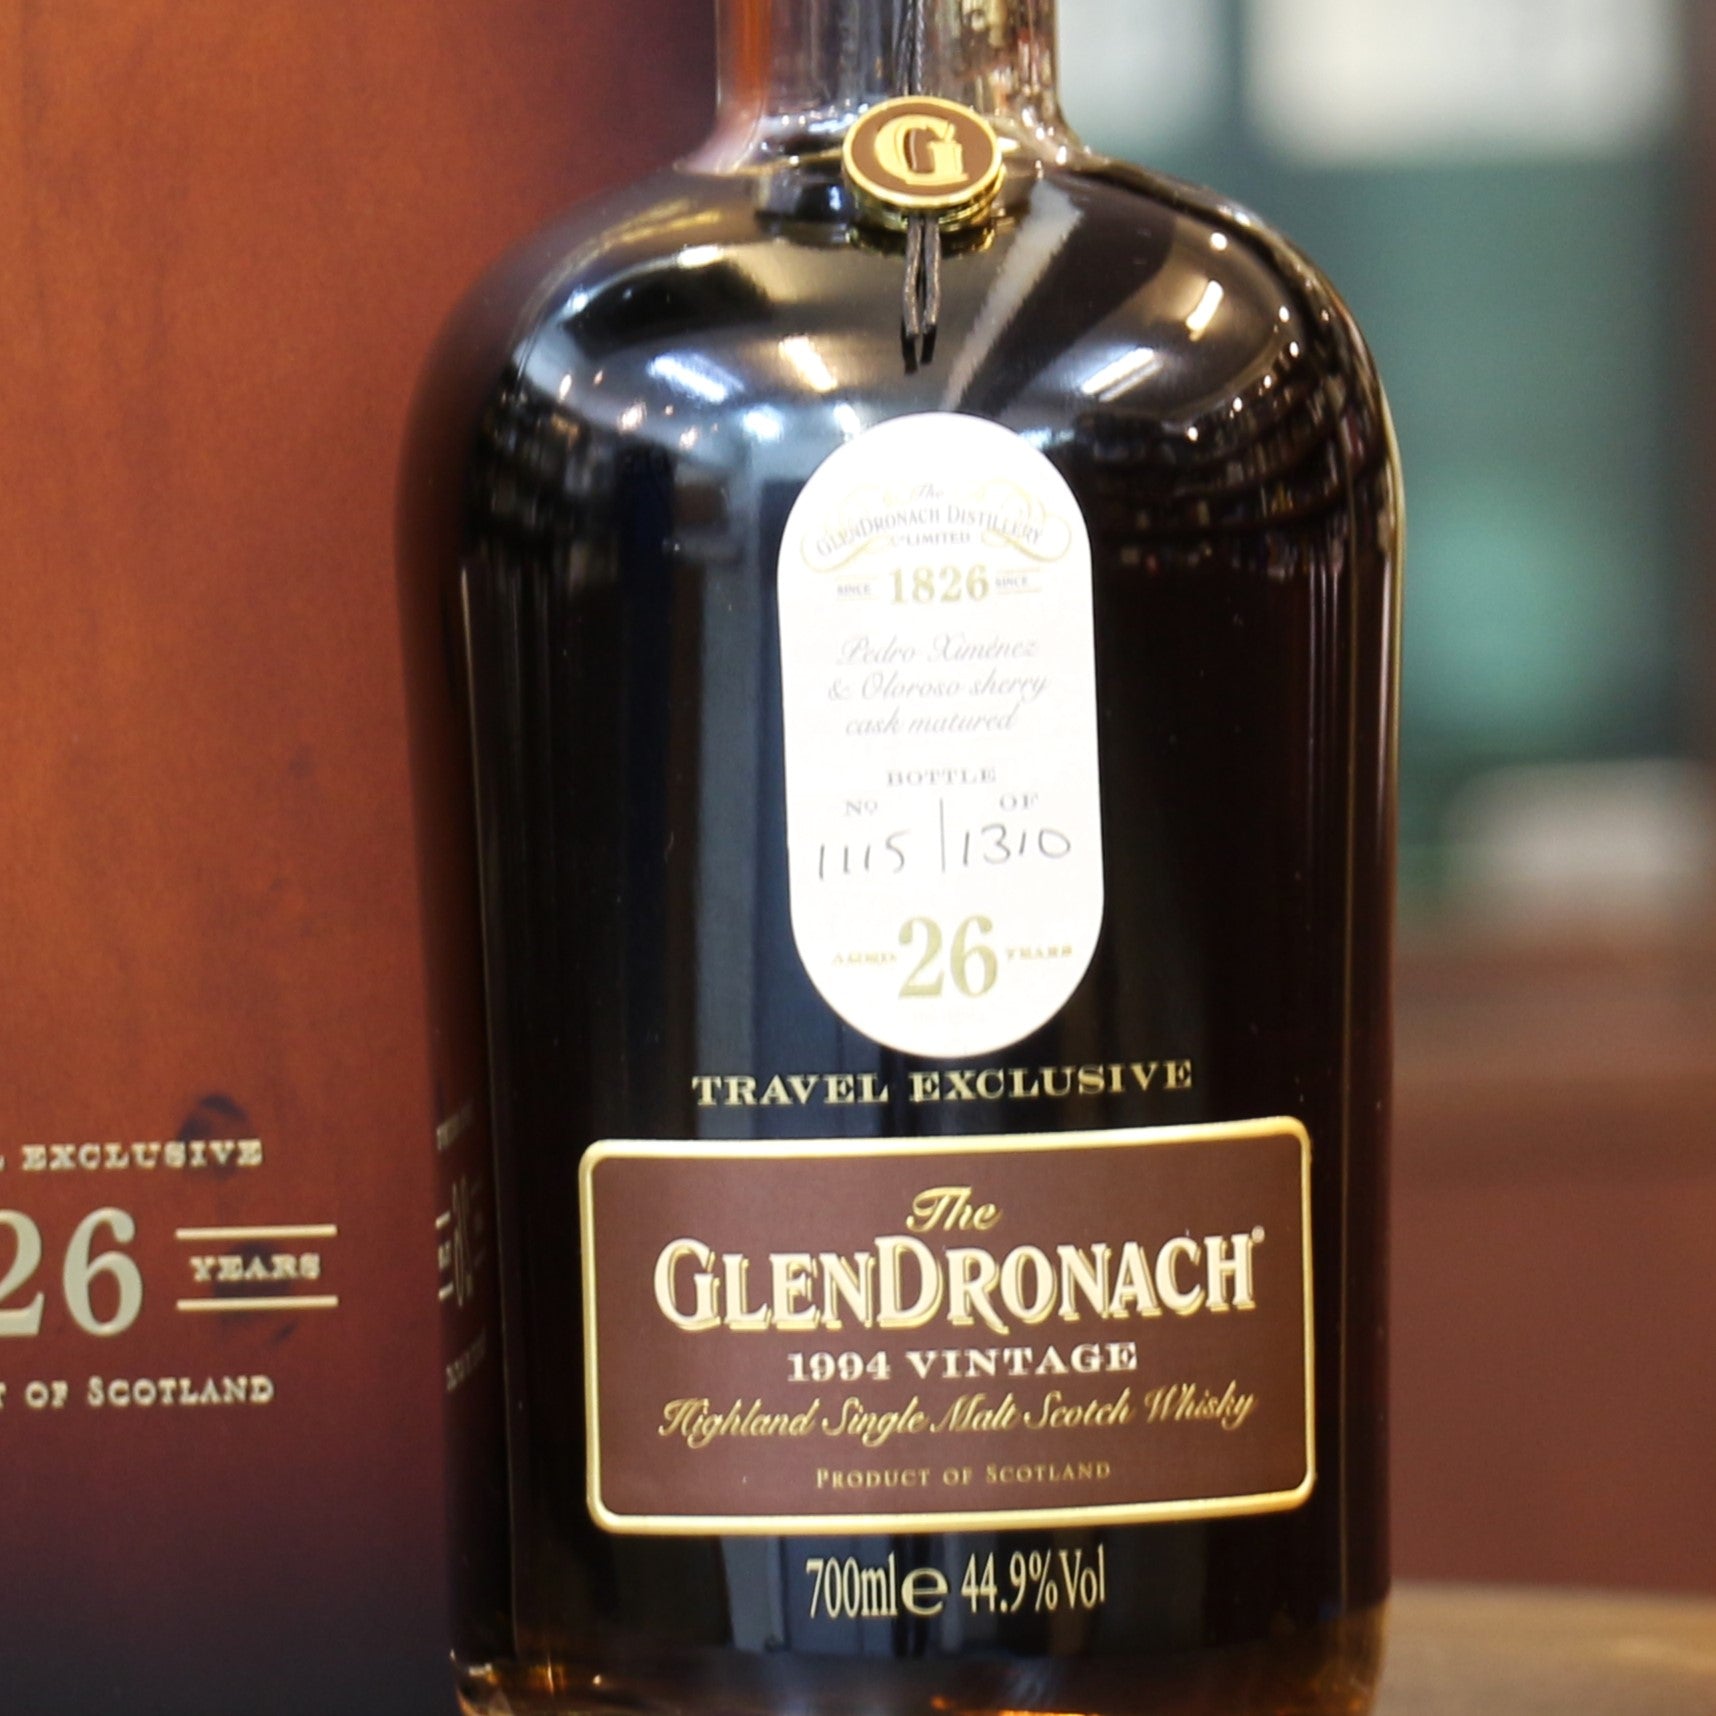 GlenDronach 1994 Vintage 26 Years Old Single Malt Scotch Whisky